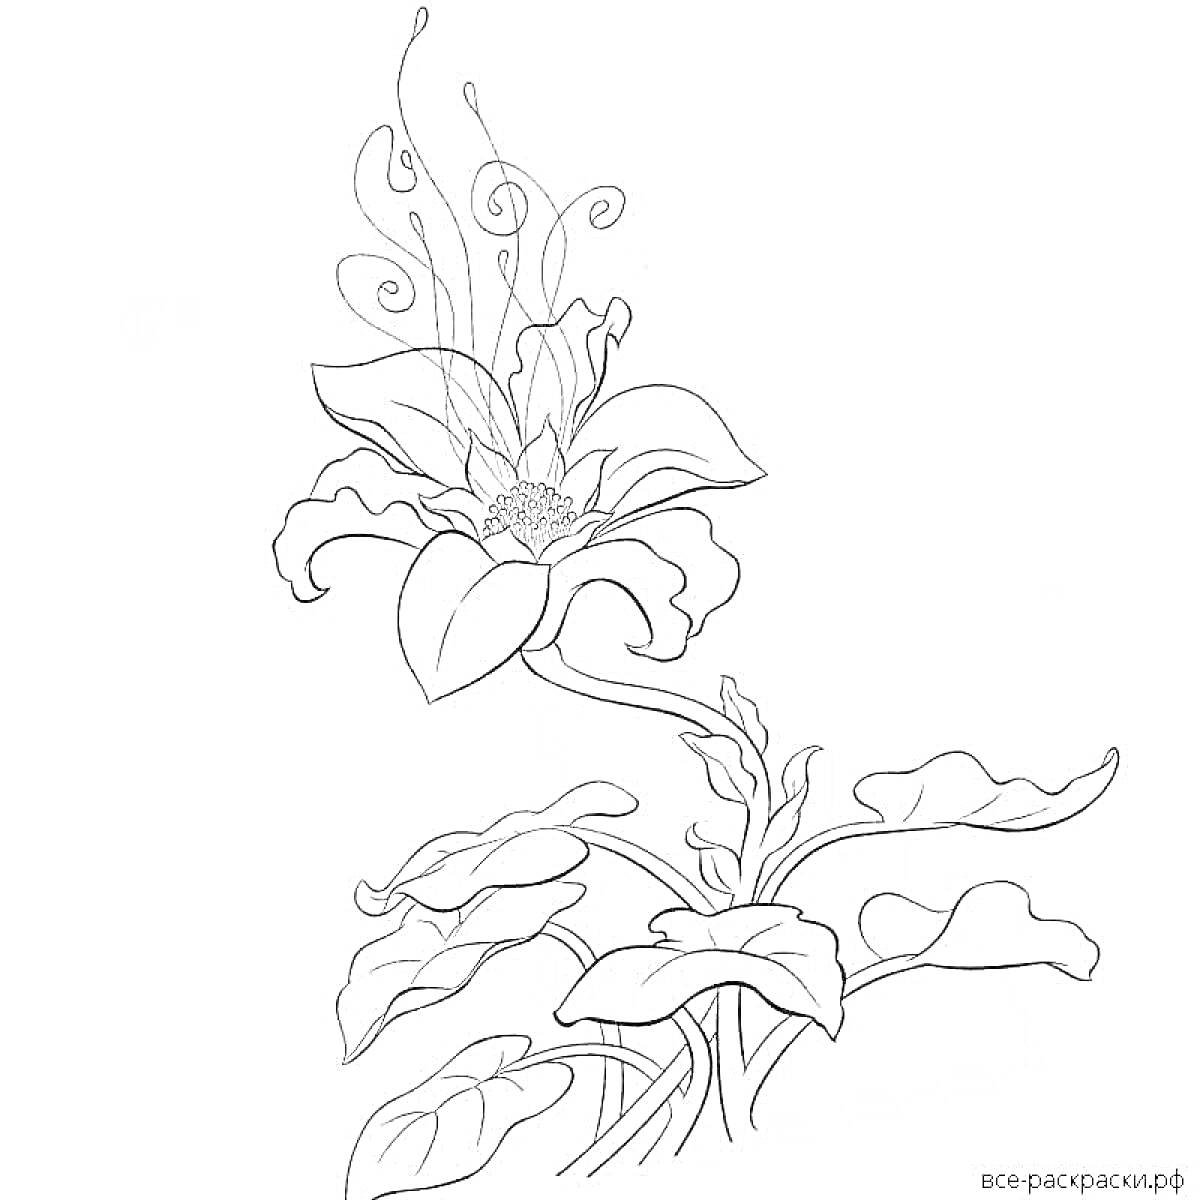 Раскраска Цветок с завивающимися лепестками на высоком стебле с крупными листьями